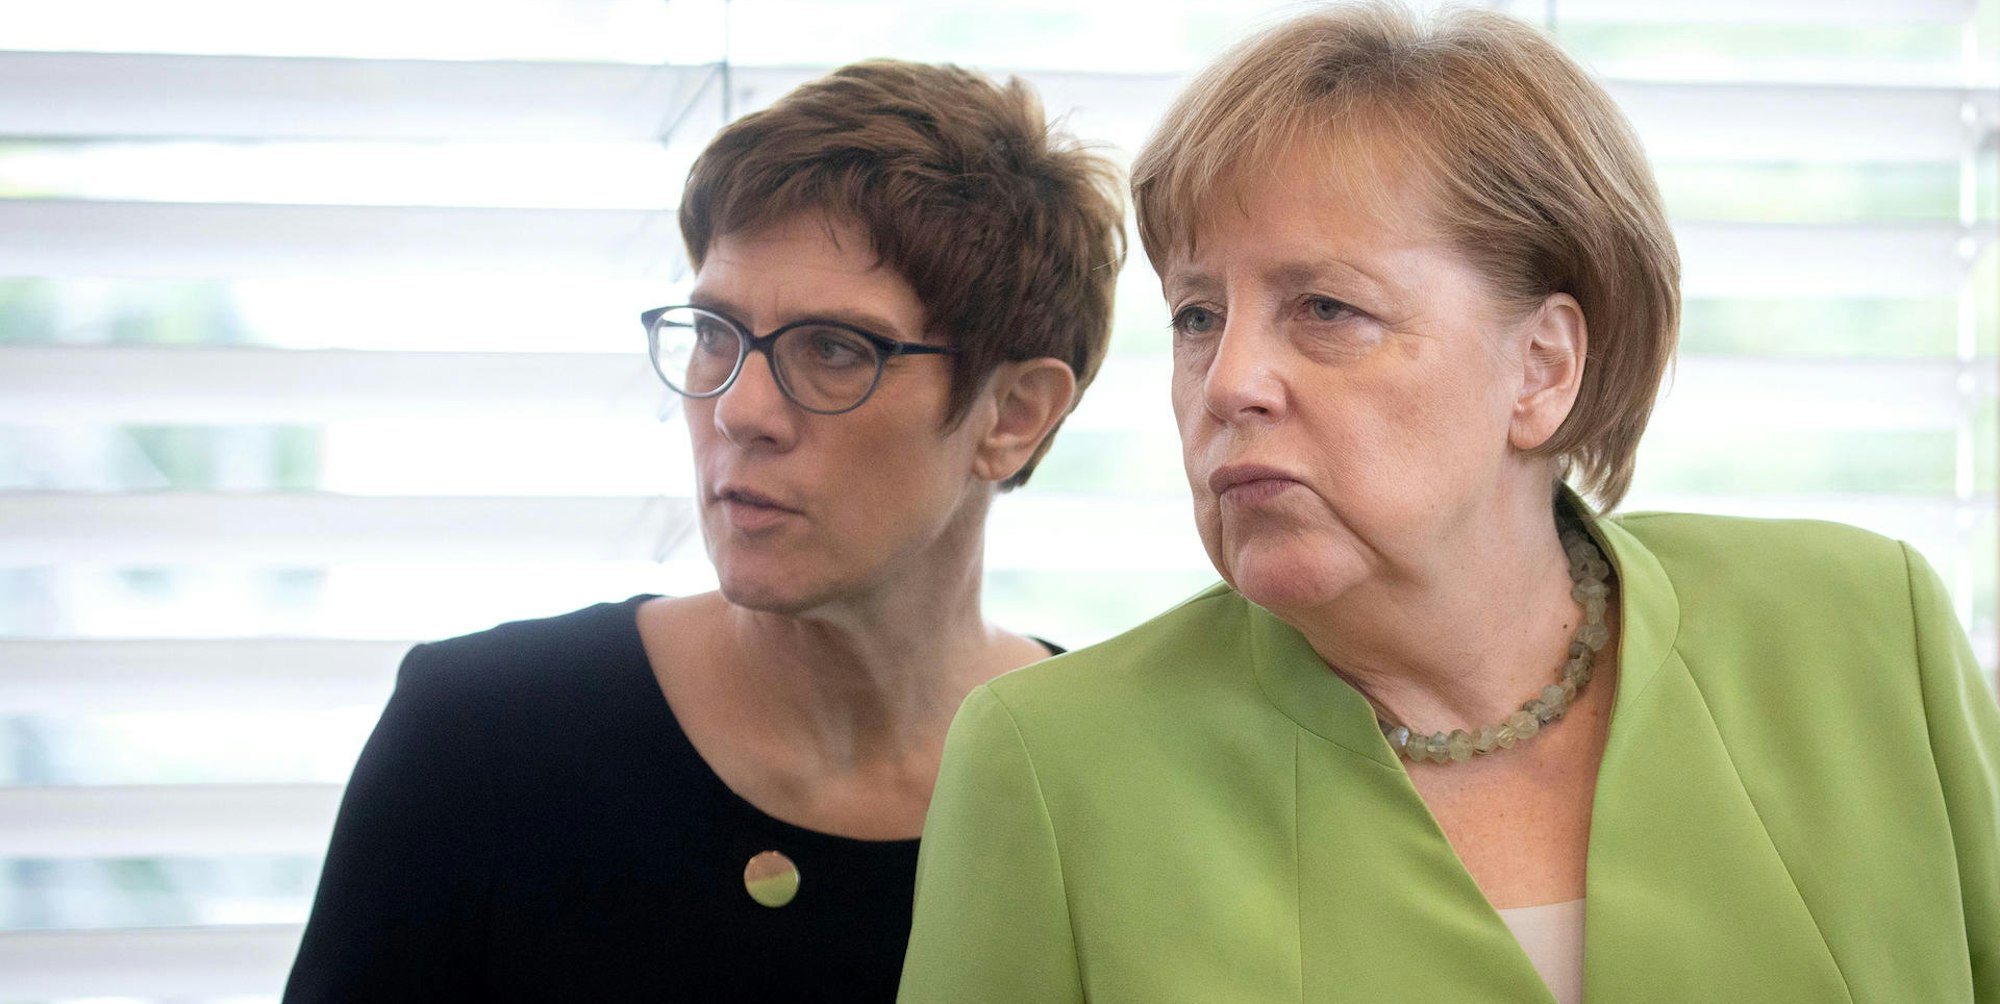 Kramp-Karrenbauer und Merkel